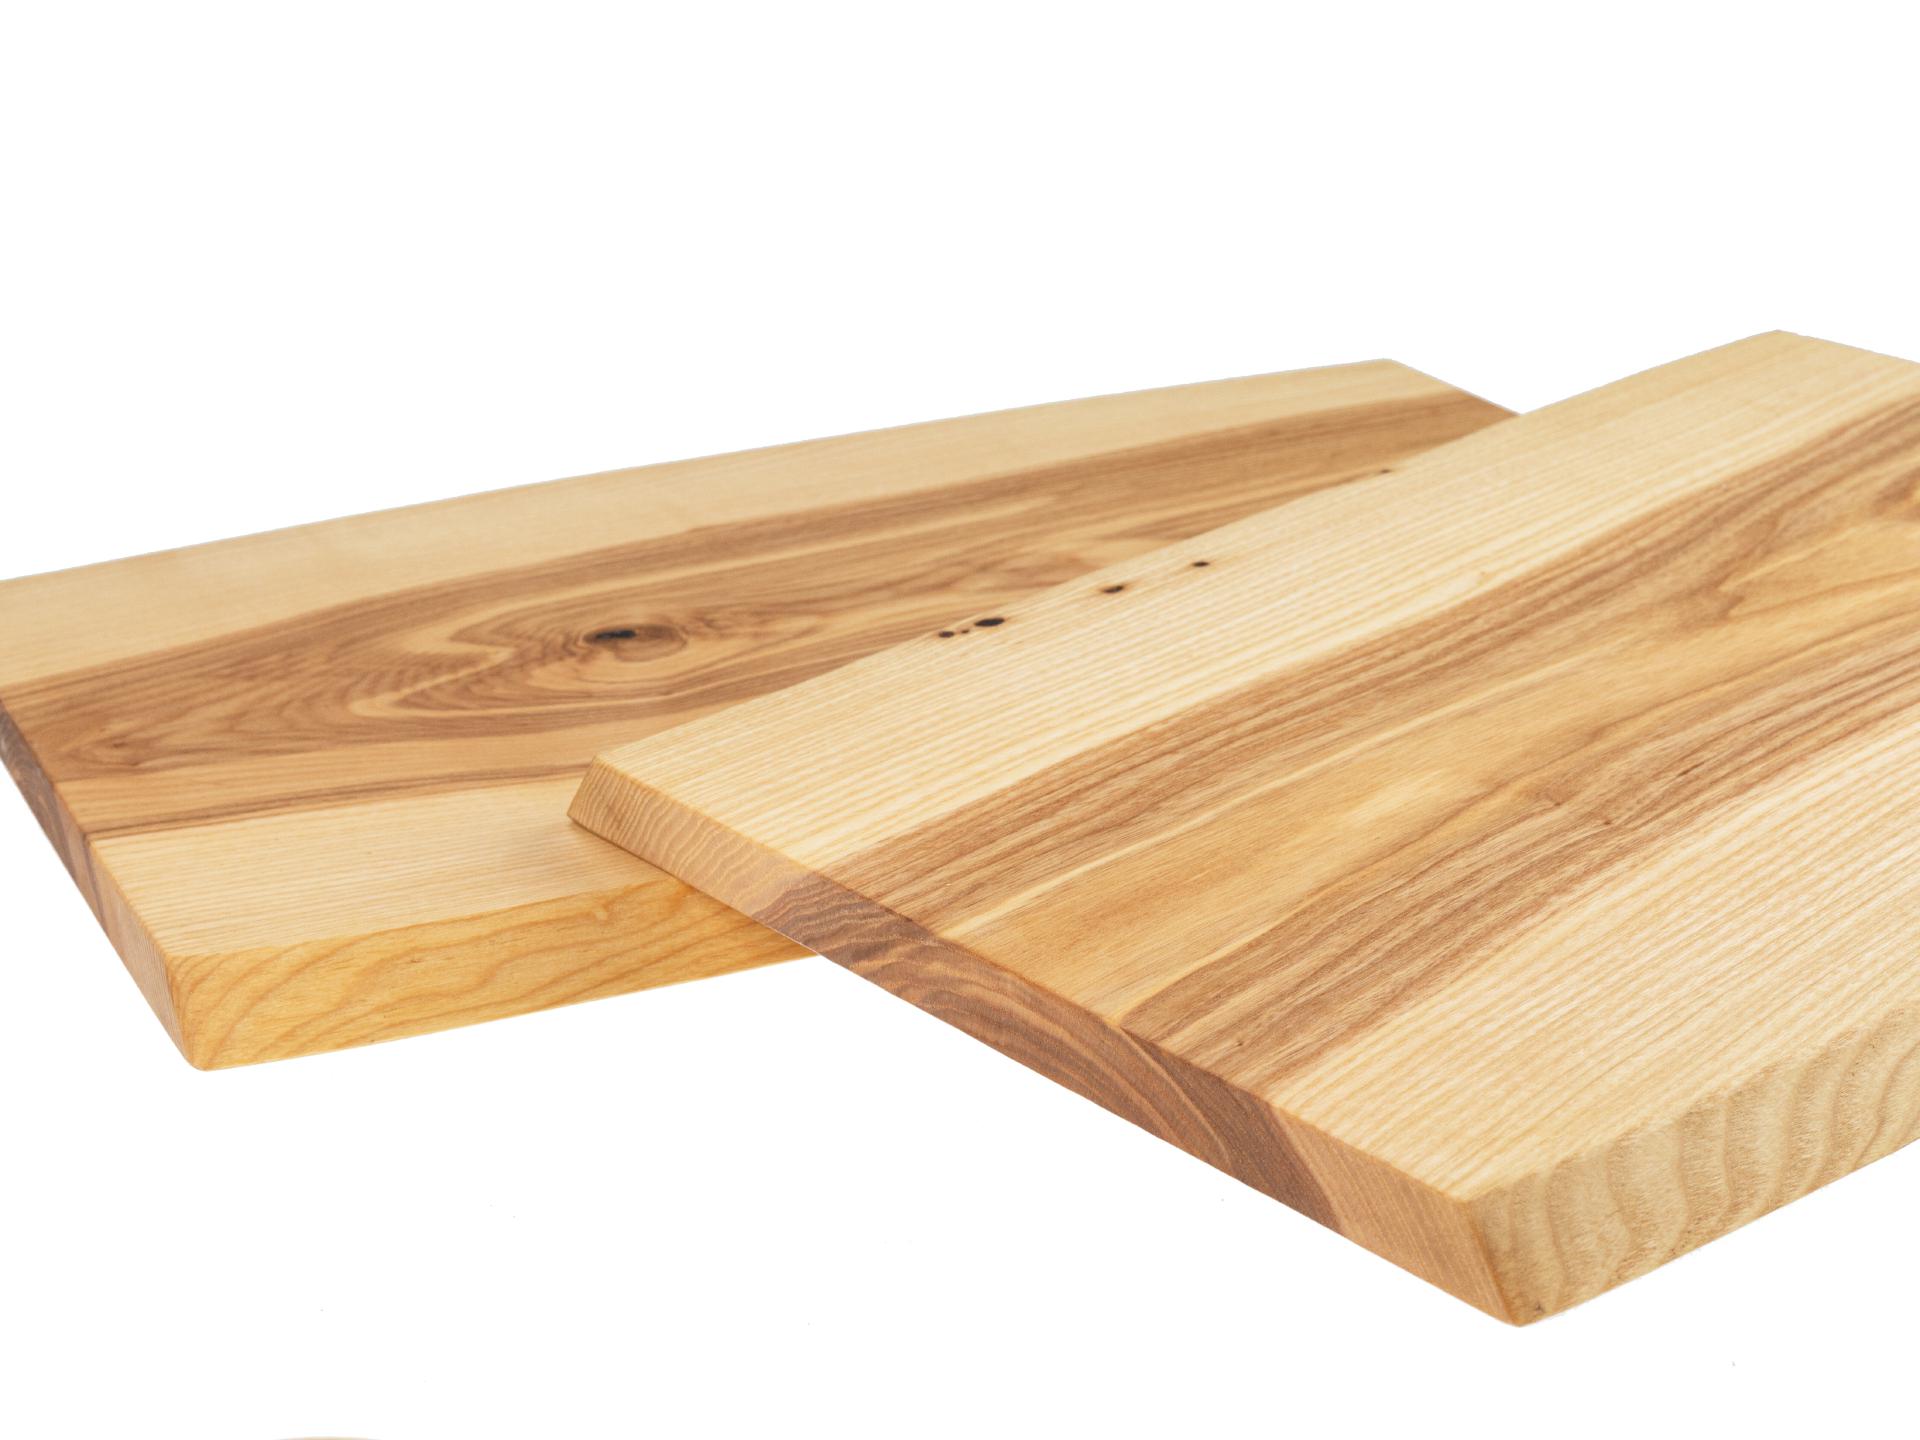 Holz Schneidebrett aus Kern Esche geölt mit Baumkante geschliffen 22mm dick 62 x 35-40 cm